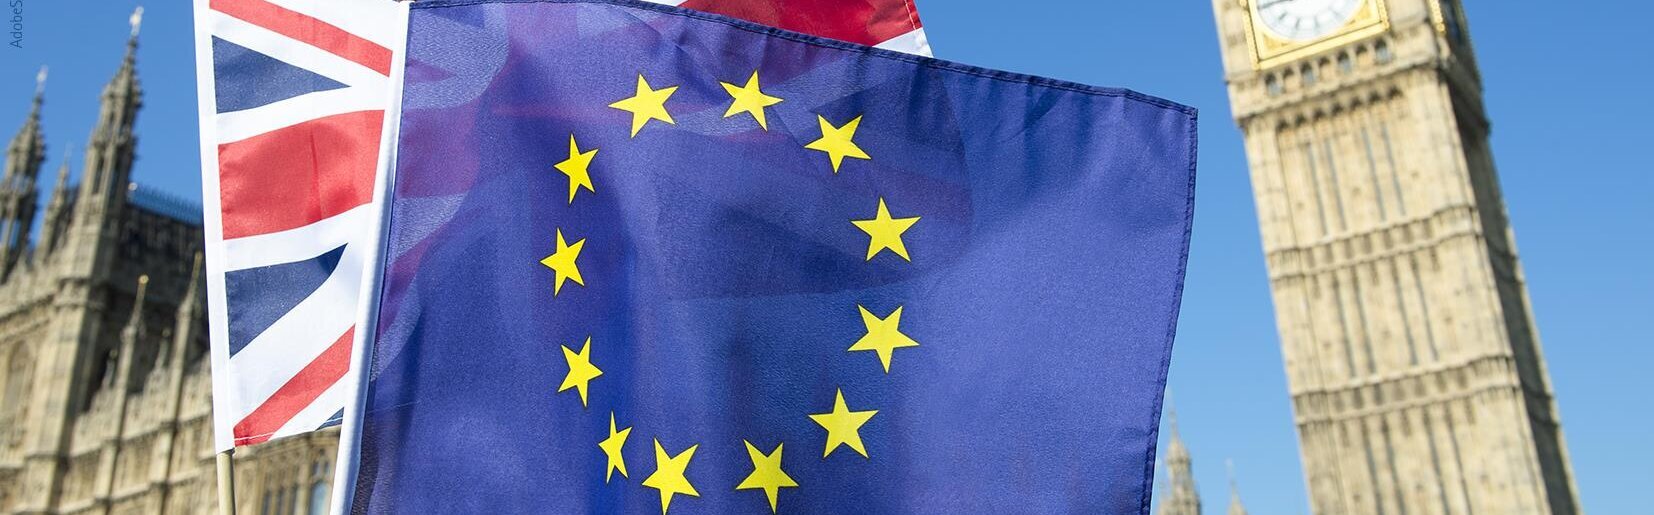 Das Bild zeigt den Big Ben und die englische und EU Flagge